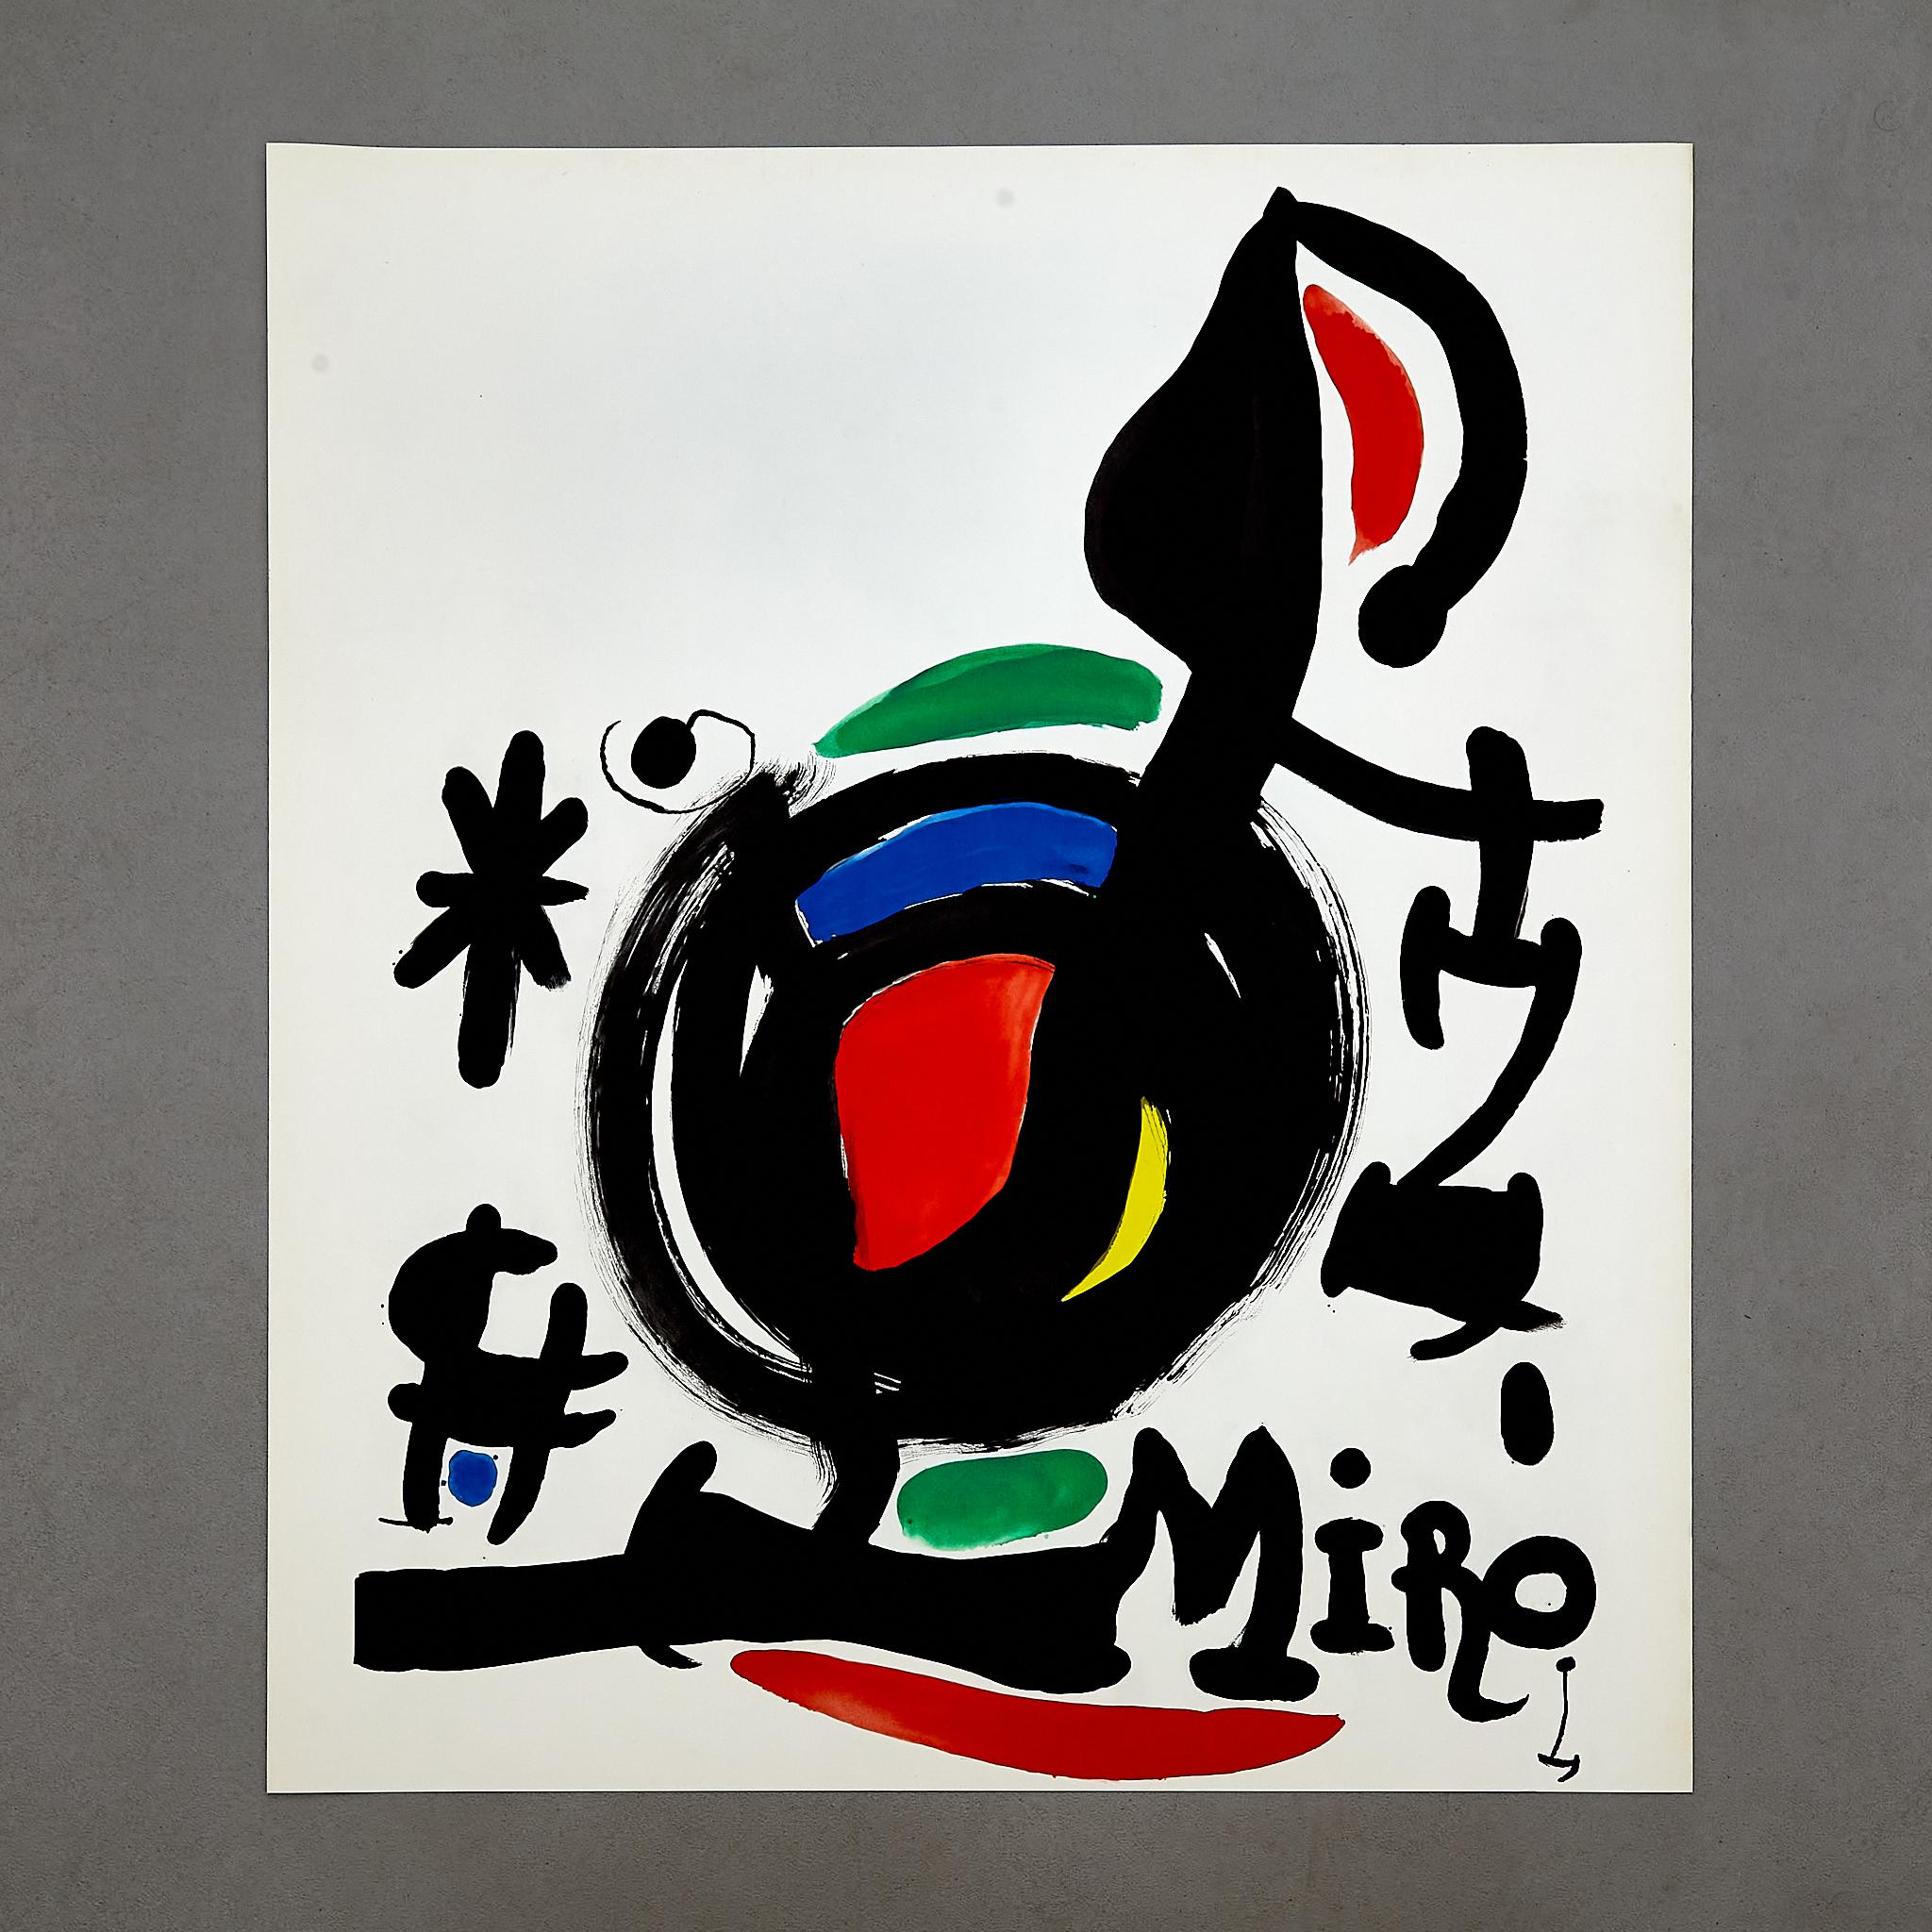 Hochwertige Farblithografie von Joan Miró.

Hergestellt in Spanien, ca. 1969.

In ursprünglichem Zustand mit geringen Gebrauchsspuren, die dem Alter und dem Gebrauch entsprechen, wobei eine schöne Patina erhalten bleibt.

Auf dem Stein